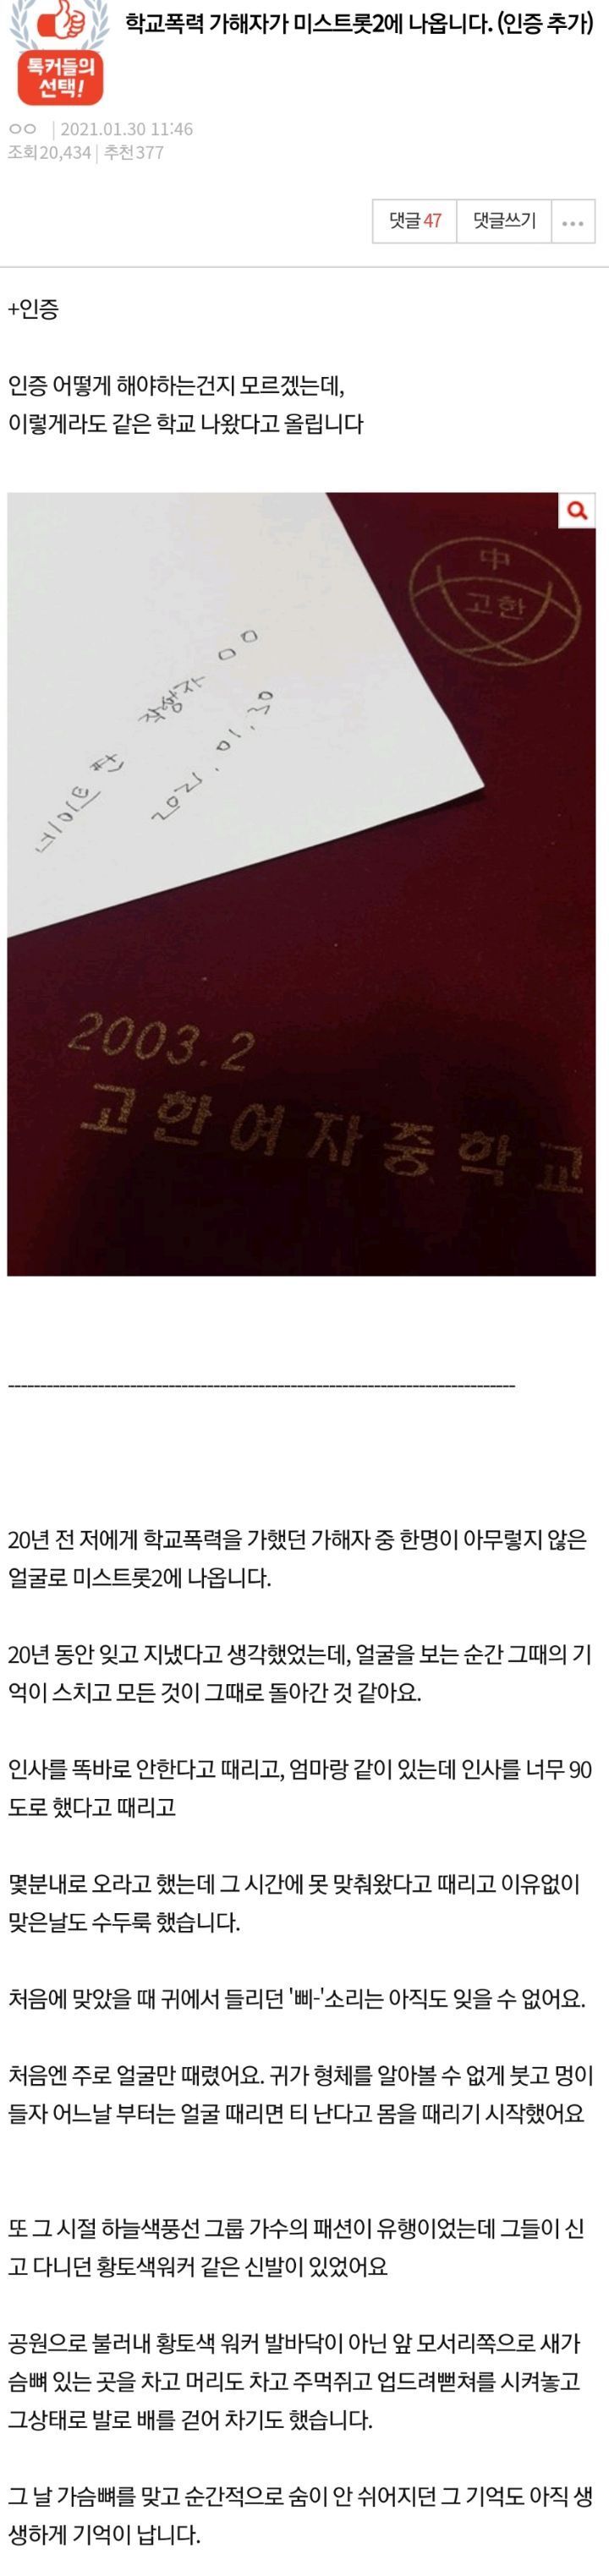 미스트롯2 출연자 학폭논란